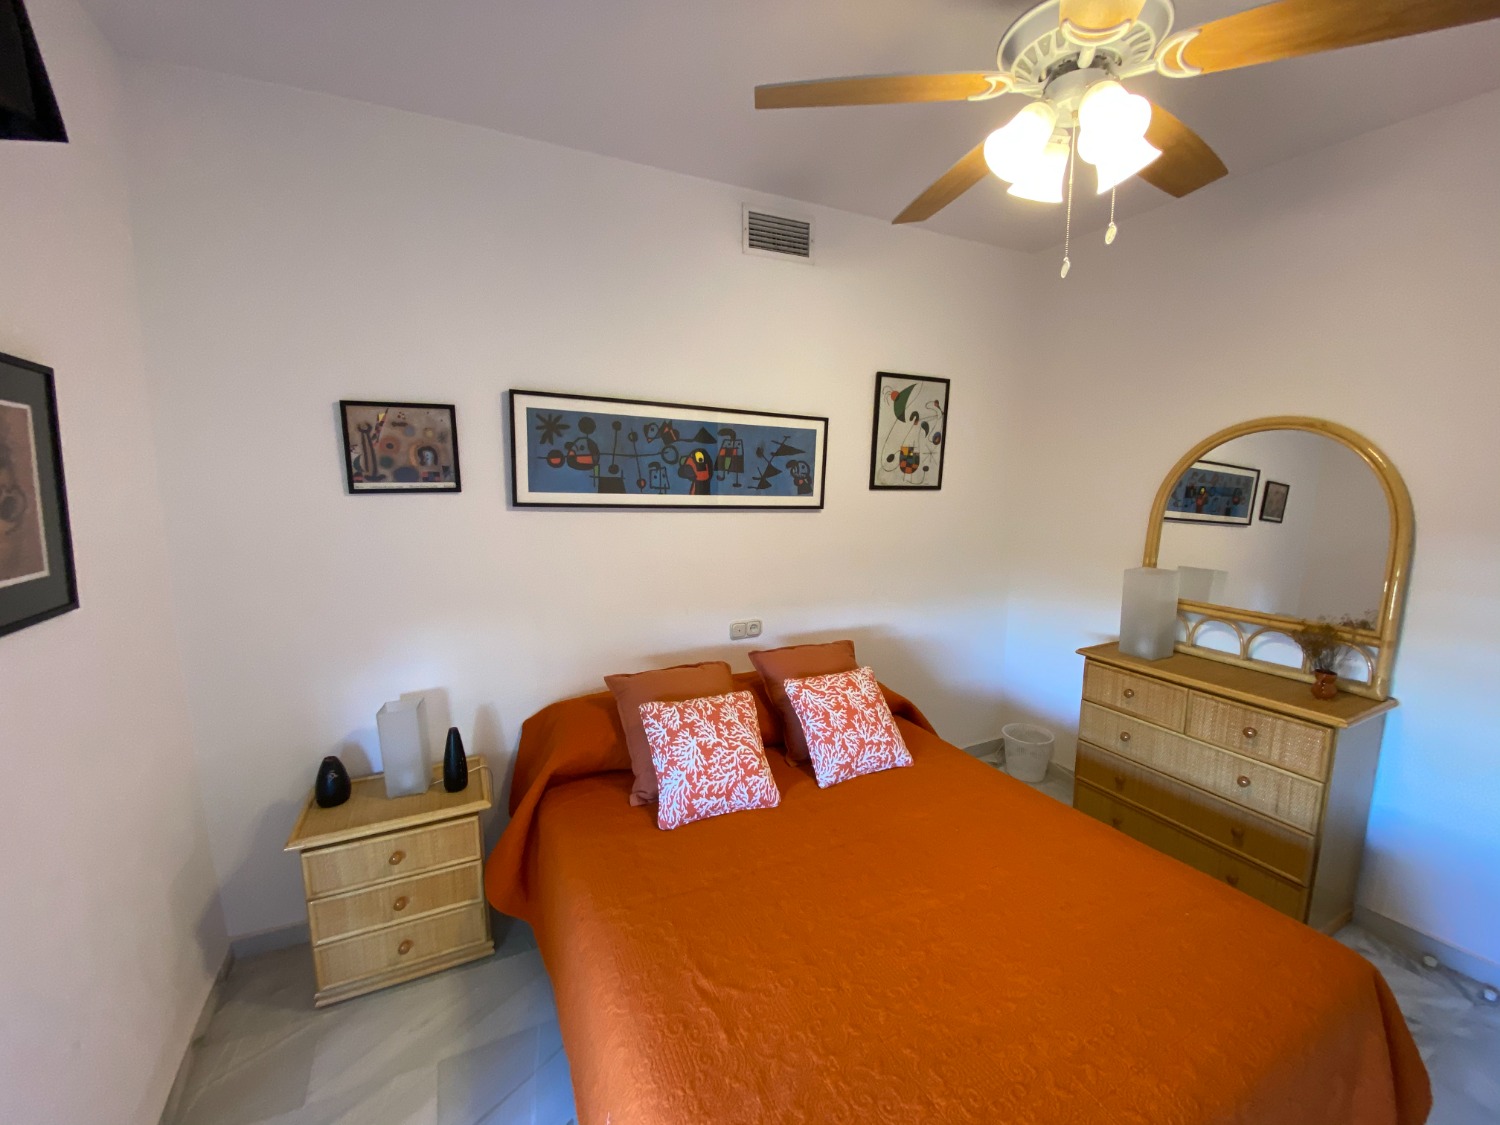 Det er dit strandhus i Fuengirola, 3 soveværelser, wifi, aircondition, nyd det.